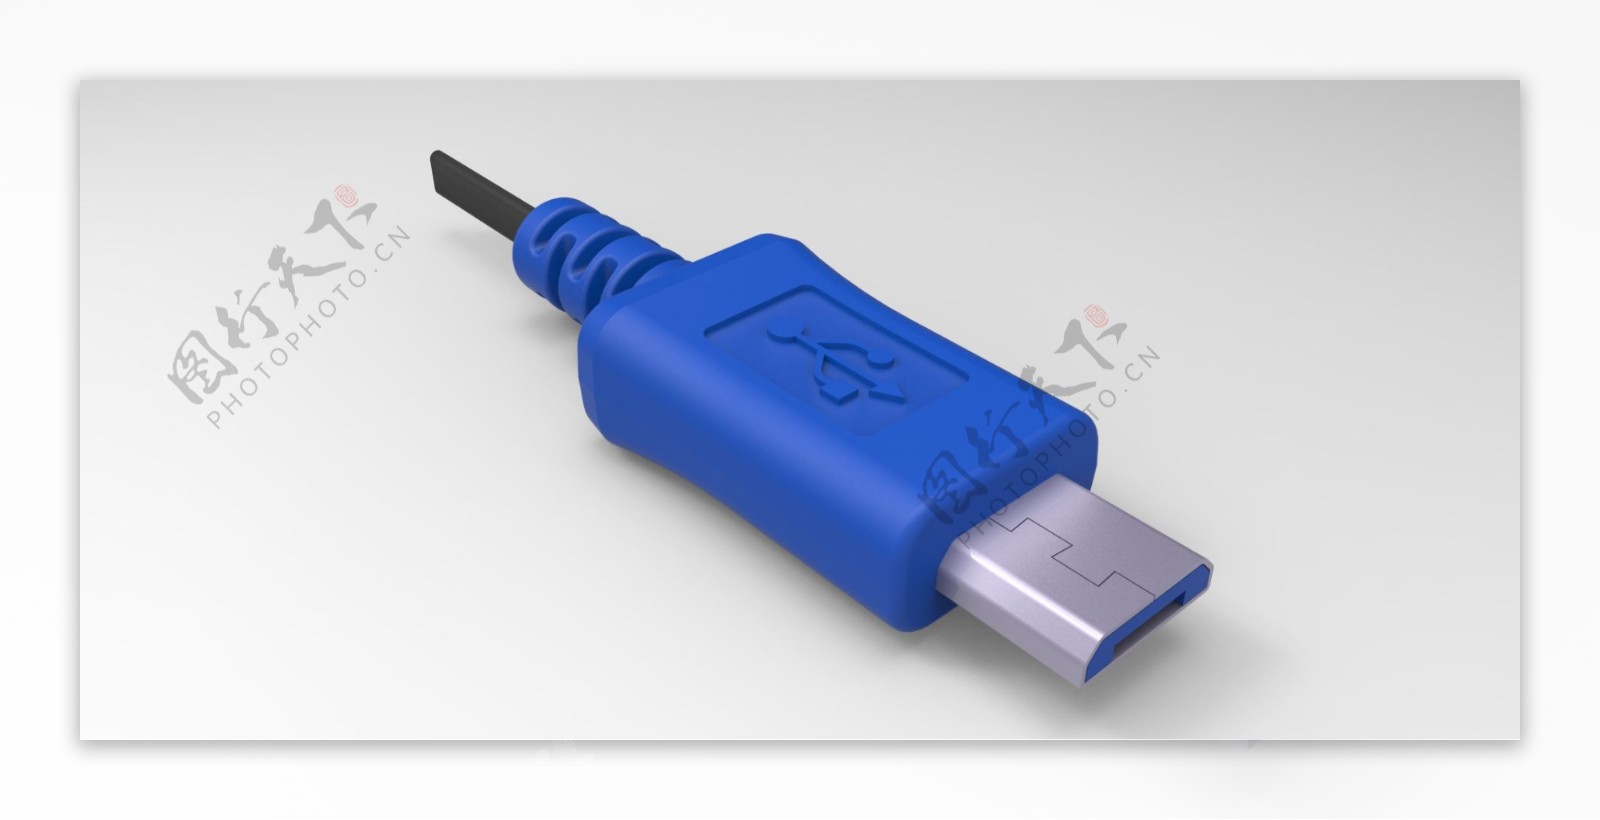 微型USB插头